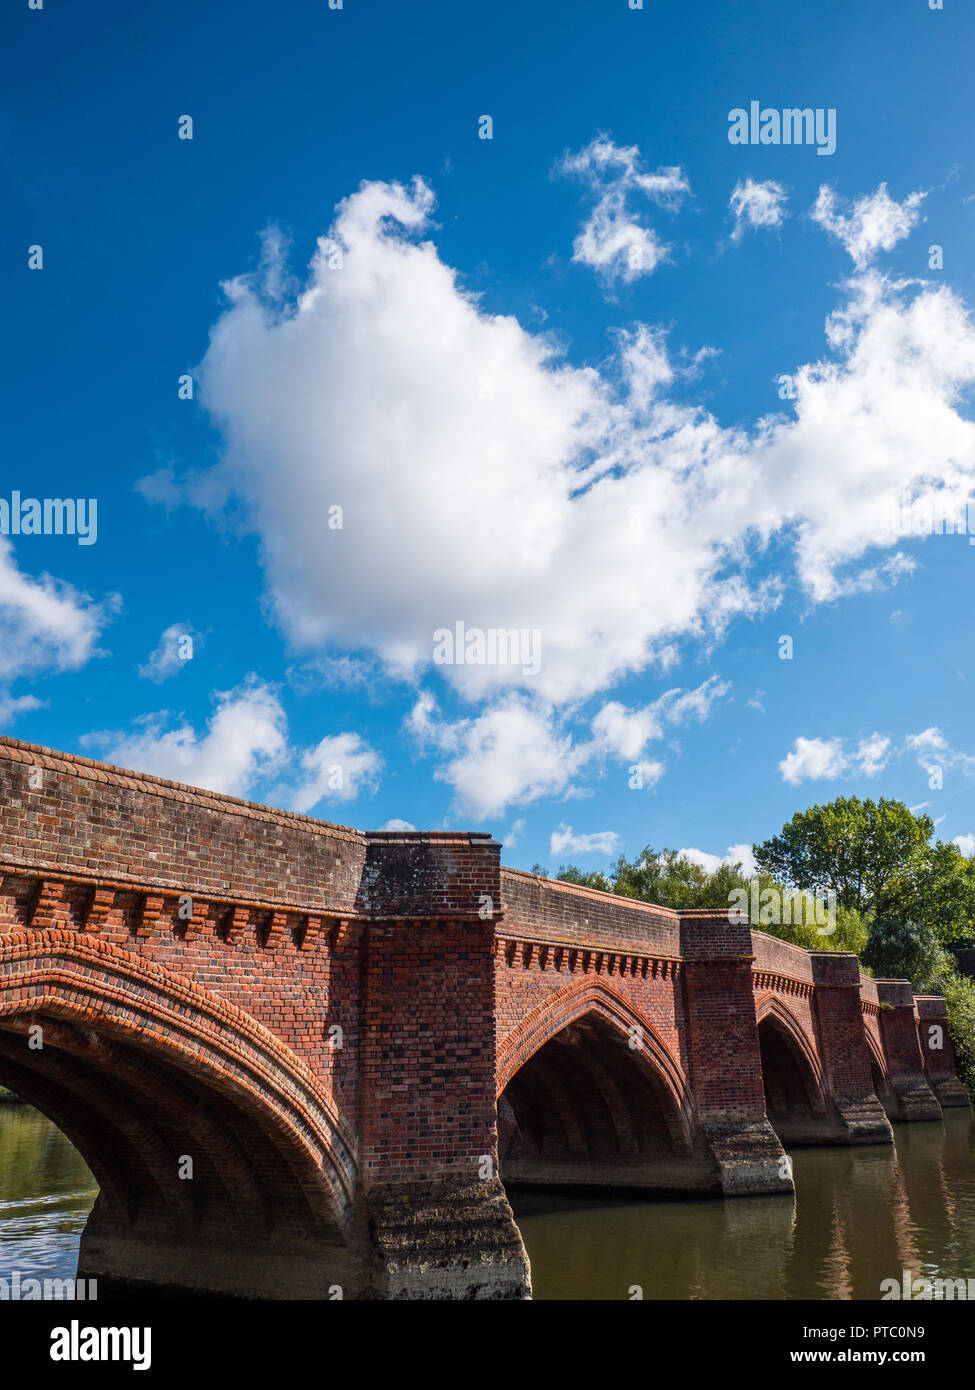 Clifton Hampden Bridge,Clifton Hampden, River Thames, Oxfordshire, England, UK, GB. Stock Photo